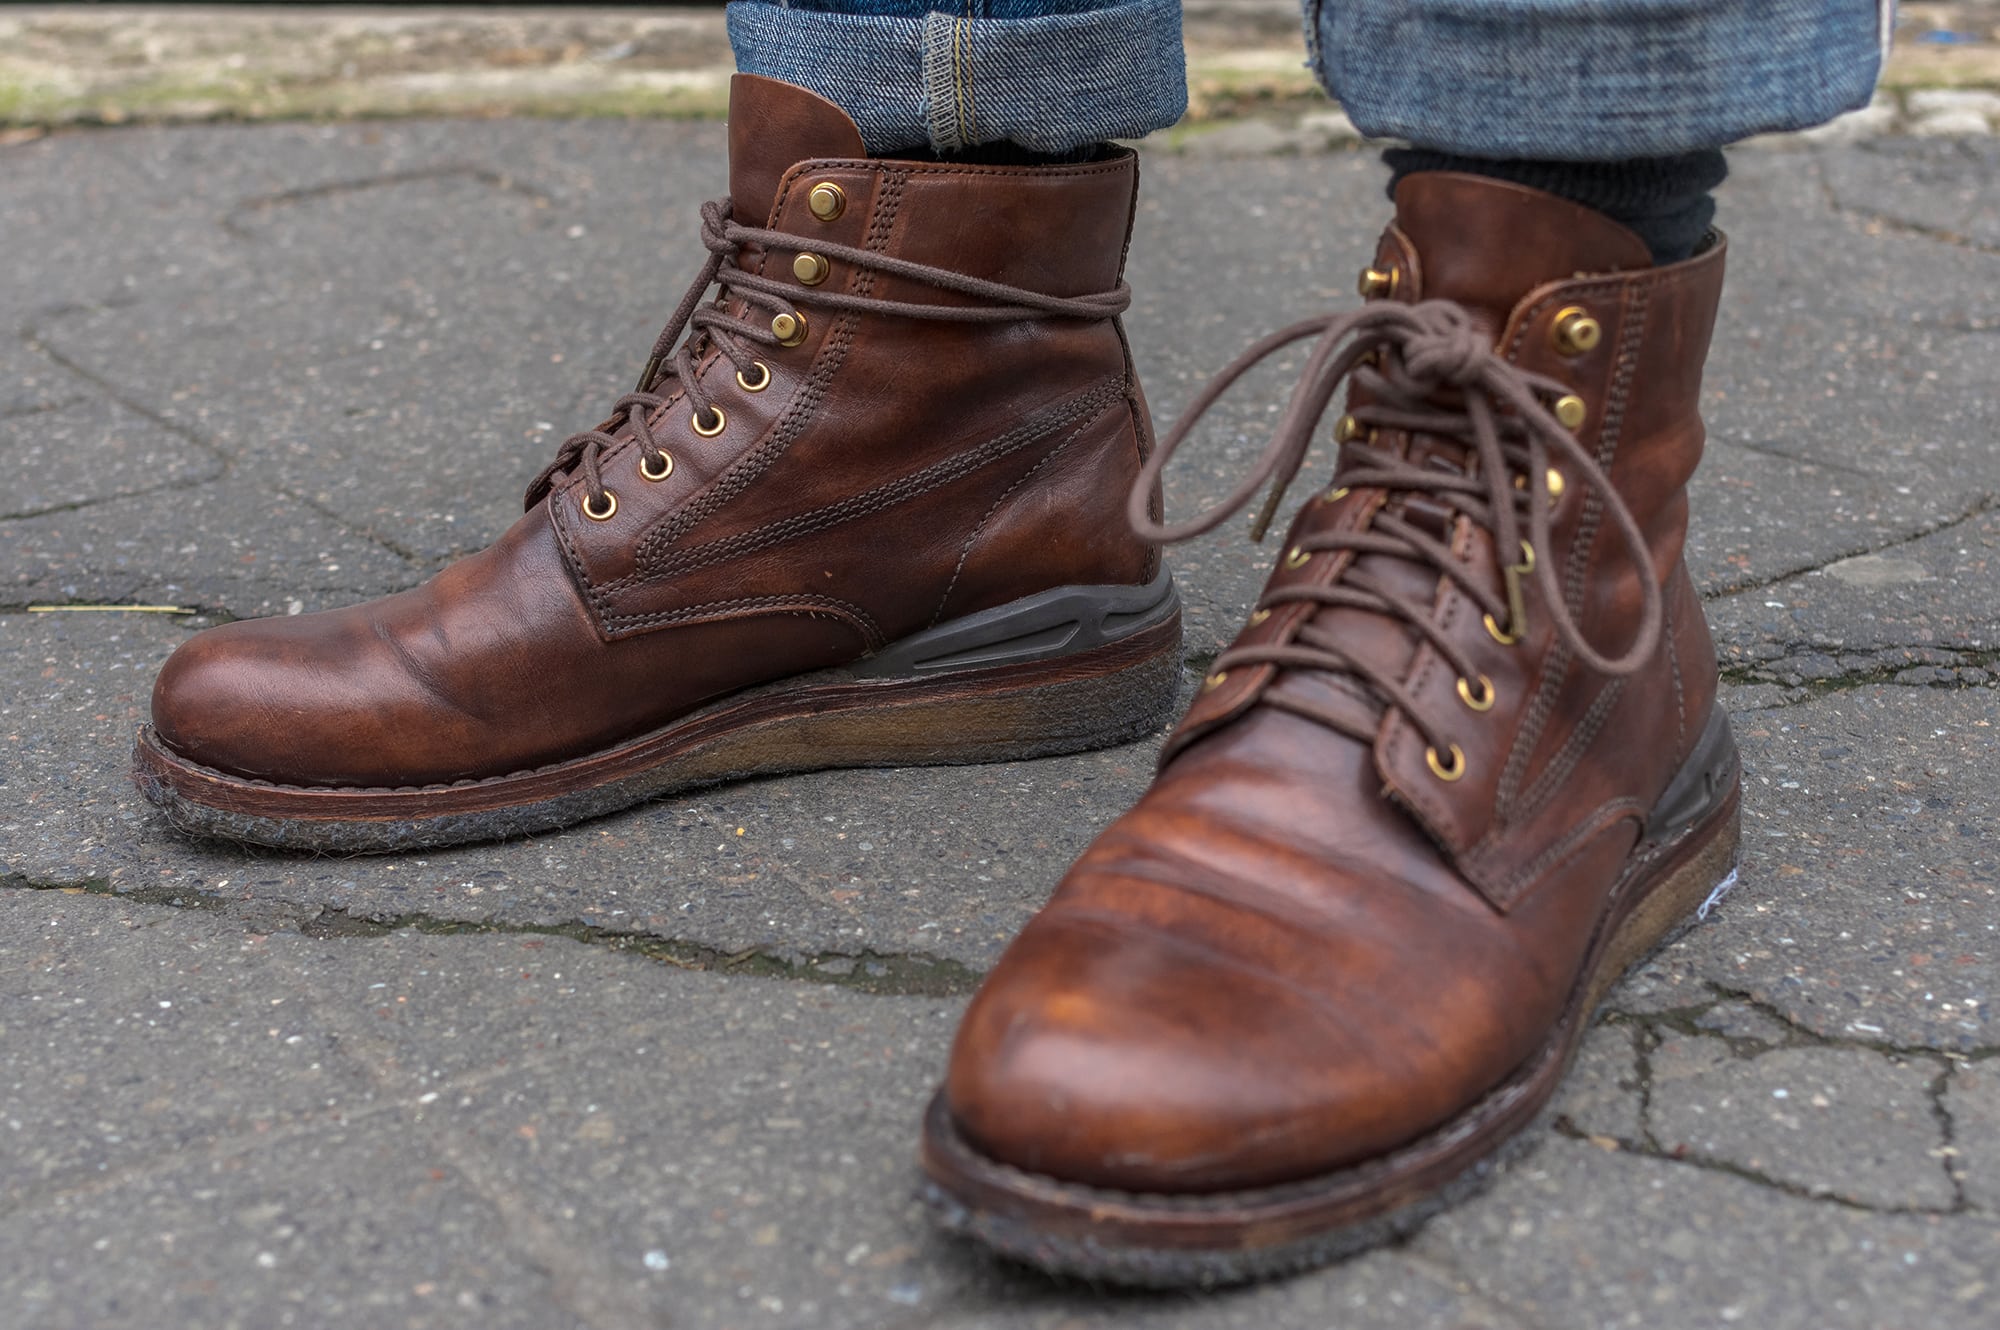 exemple de work boots revisitées par la marque japonaise Visvim et son modèle virgil boots crepe soles